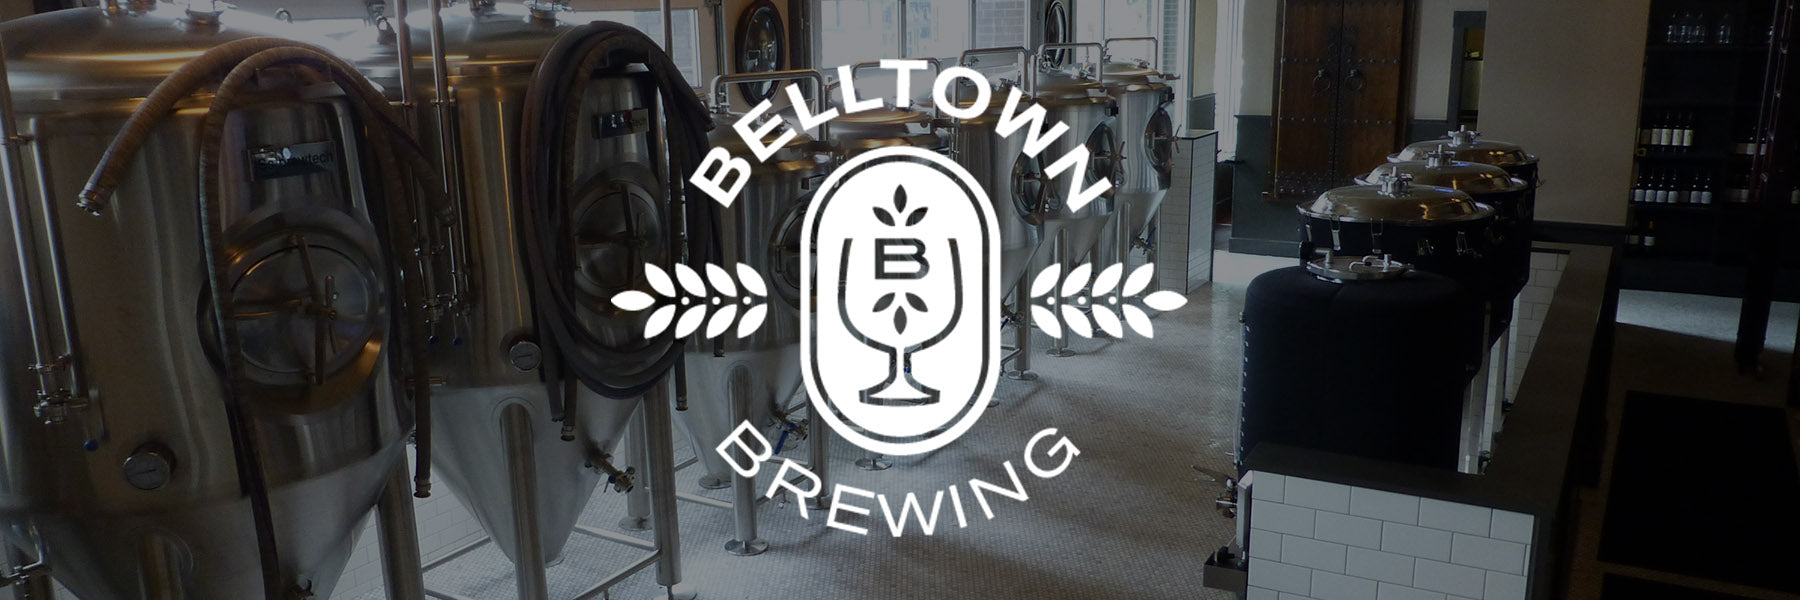 Belltown Brewing | Seattle, WA